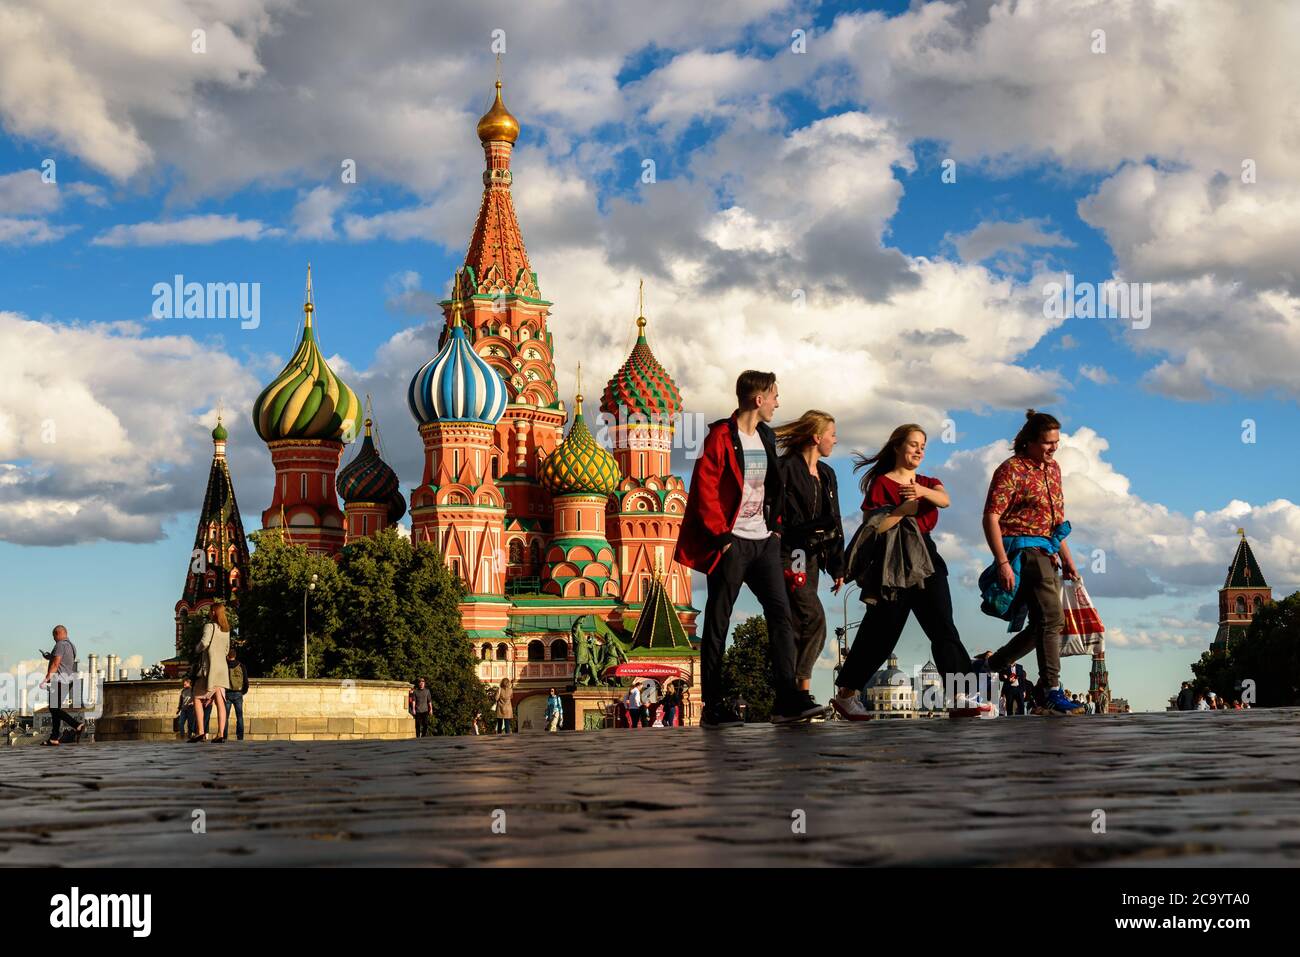 Moskau - 23. Juli 2020: Basilius-`s-Kathedrale auf dem Roten Platz in Moskau, Russland. Es ist berühmte Touristenattraktion von Moskau. Leute gehen in der Nähe der alten Saint Ba Stockfoto